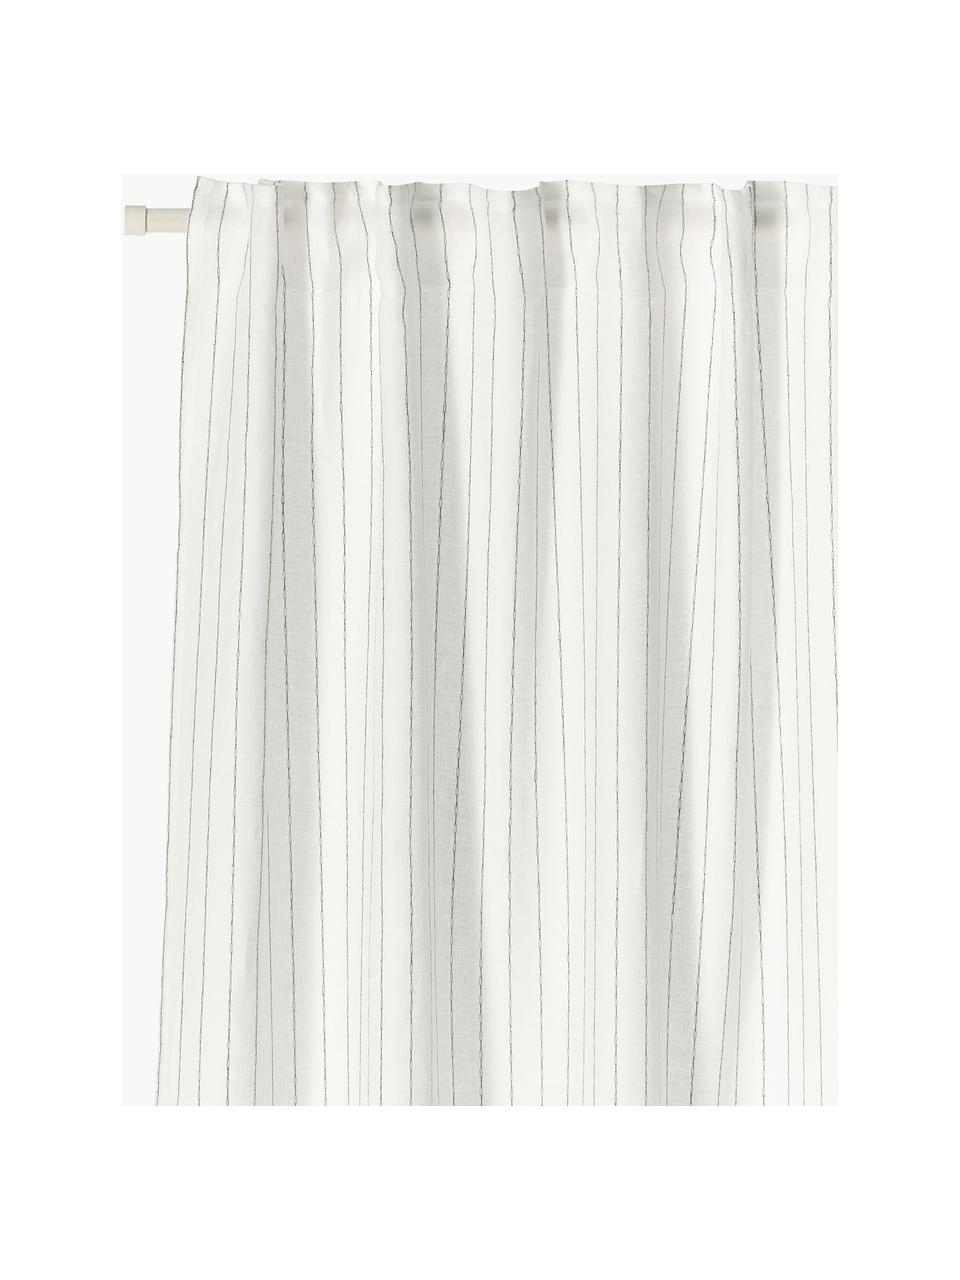 Semi-transparante gordijnen Berken met multiband, 2 stuks, 100% linnen, Gebroken wit, B 130 x L 260 cm